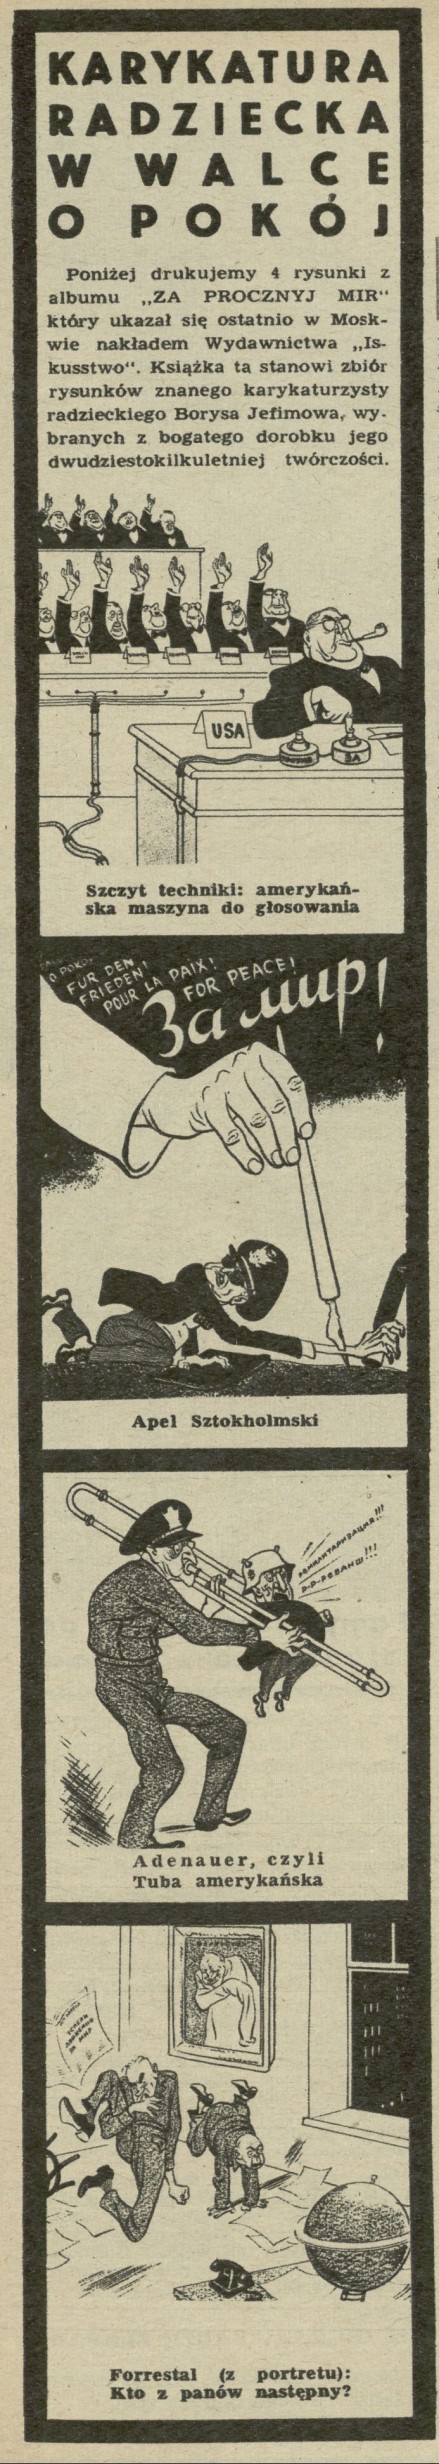 Karykatura radziecka w walce o pokój